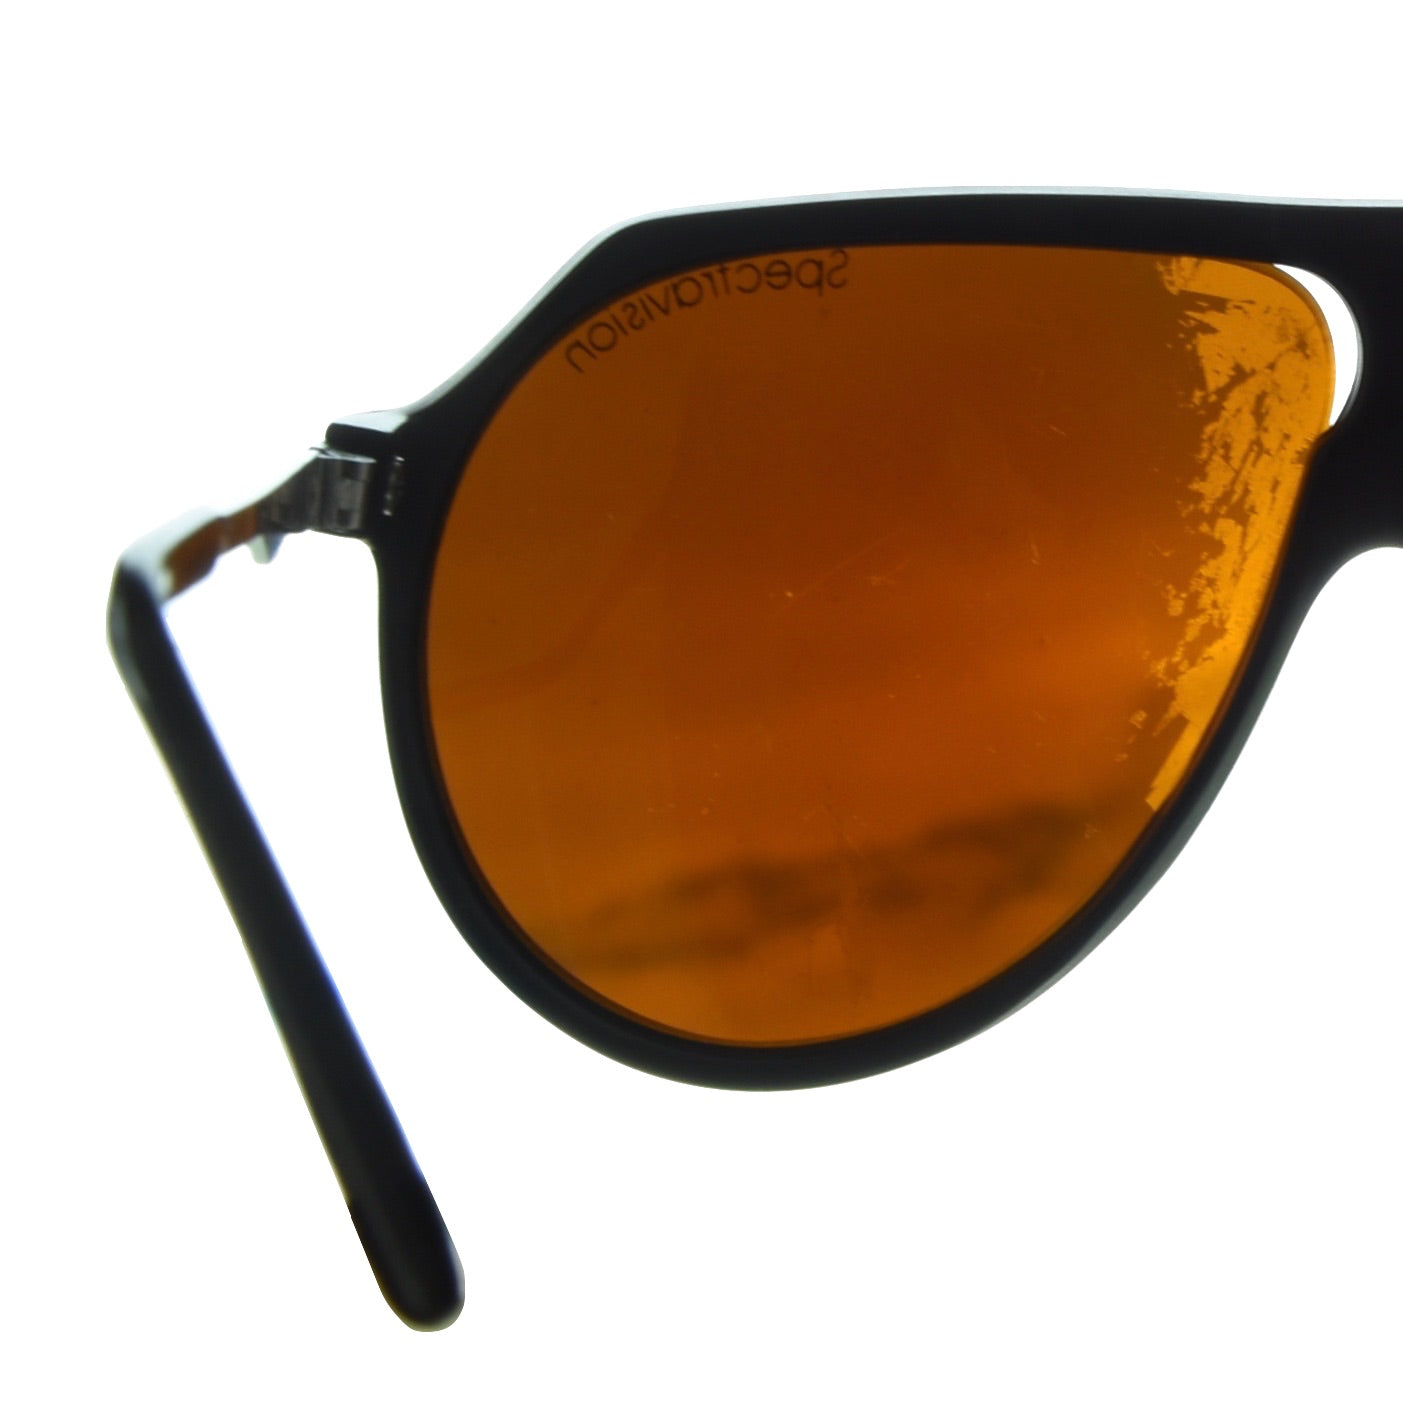 Vintage Alpina Sonnenbrille Mod. Profi